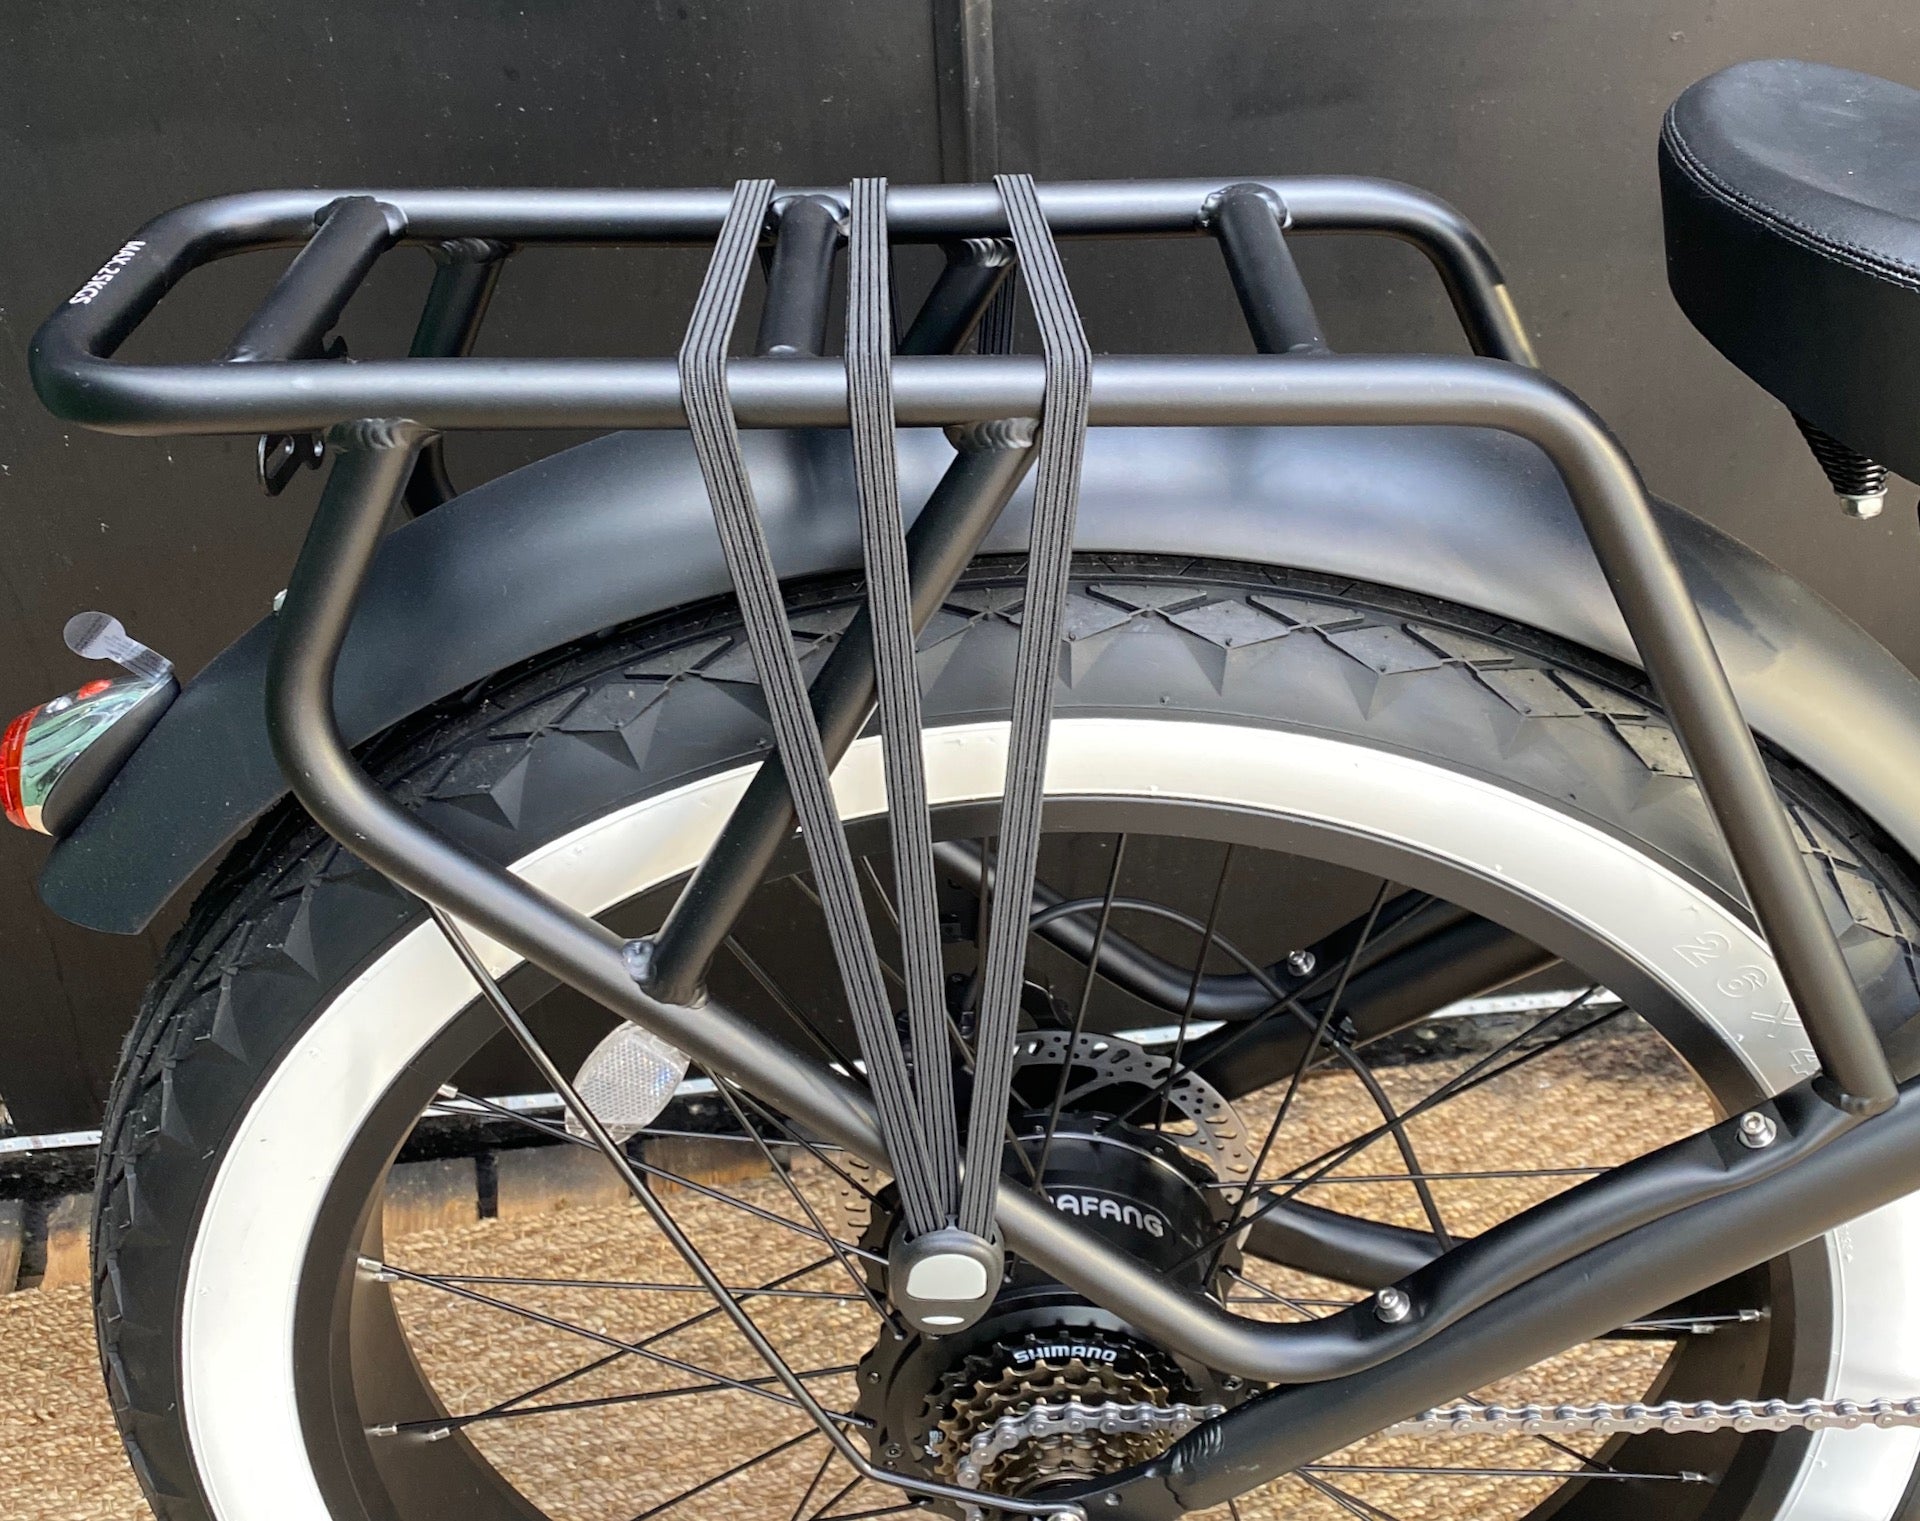 Fat bike vélo bicycle bike tout terrain électrique assistance location vente bouboubicloo b’cloo fait main porte bagage roue arrière